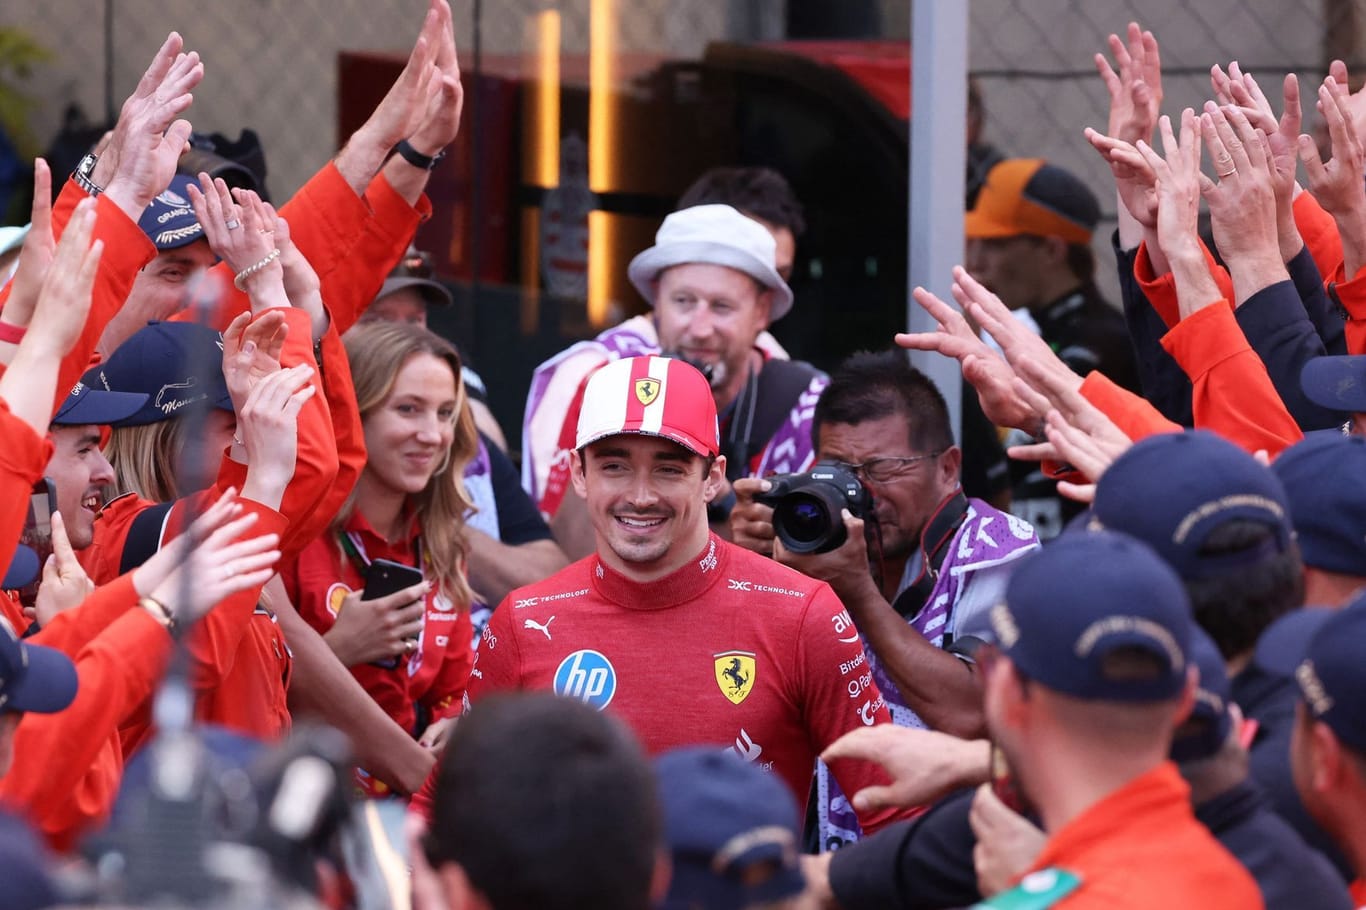 Umjubelter Sieger: Charles Leclerc wird nach seinem Erfolg beim Heimrennen in Monaco gefeiert.